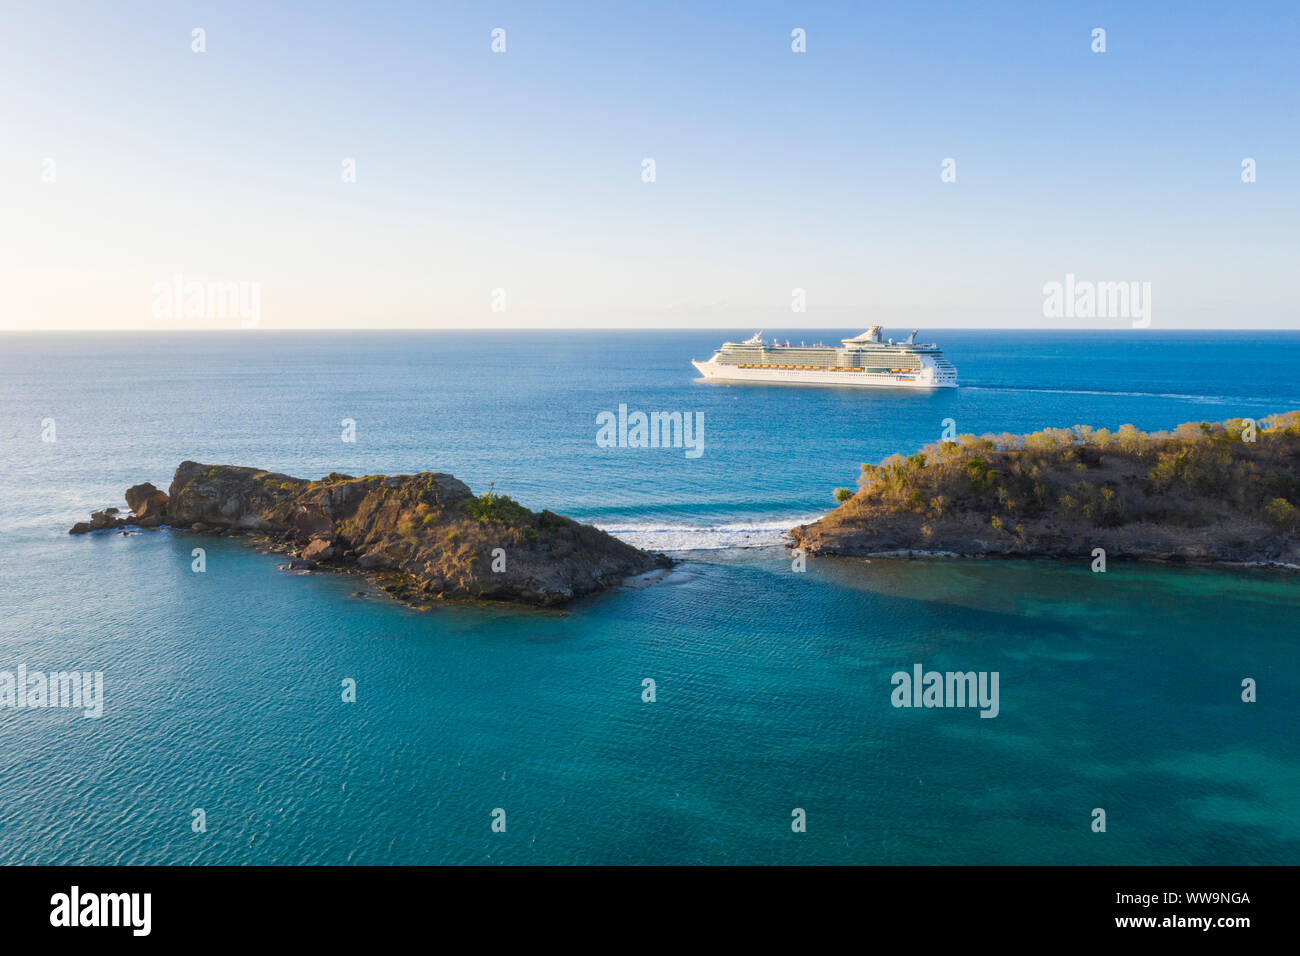 Vista aerea della lussuosa nave da crociera a vela nel Mar dei Caraibi, Antille, America Centrale Foto Stock